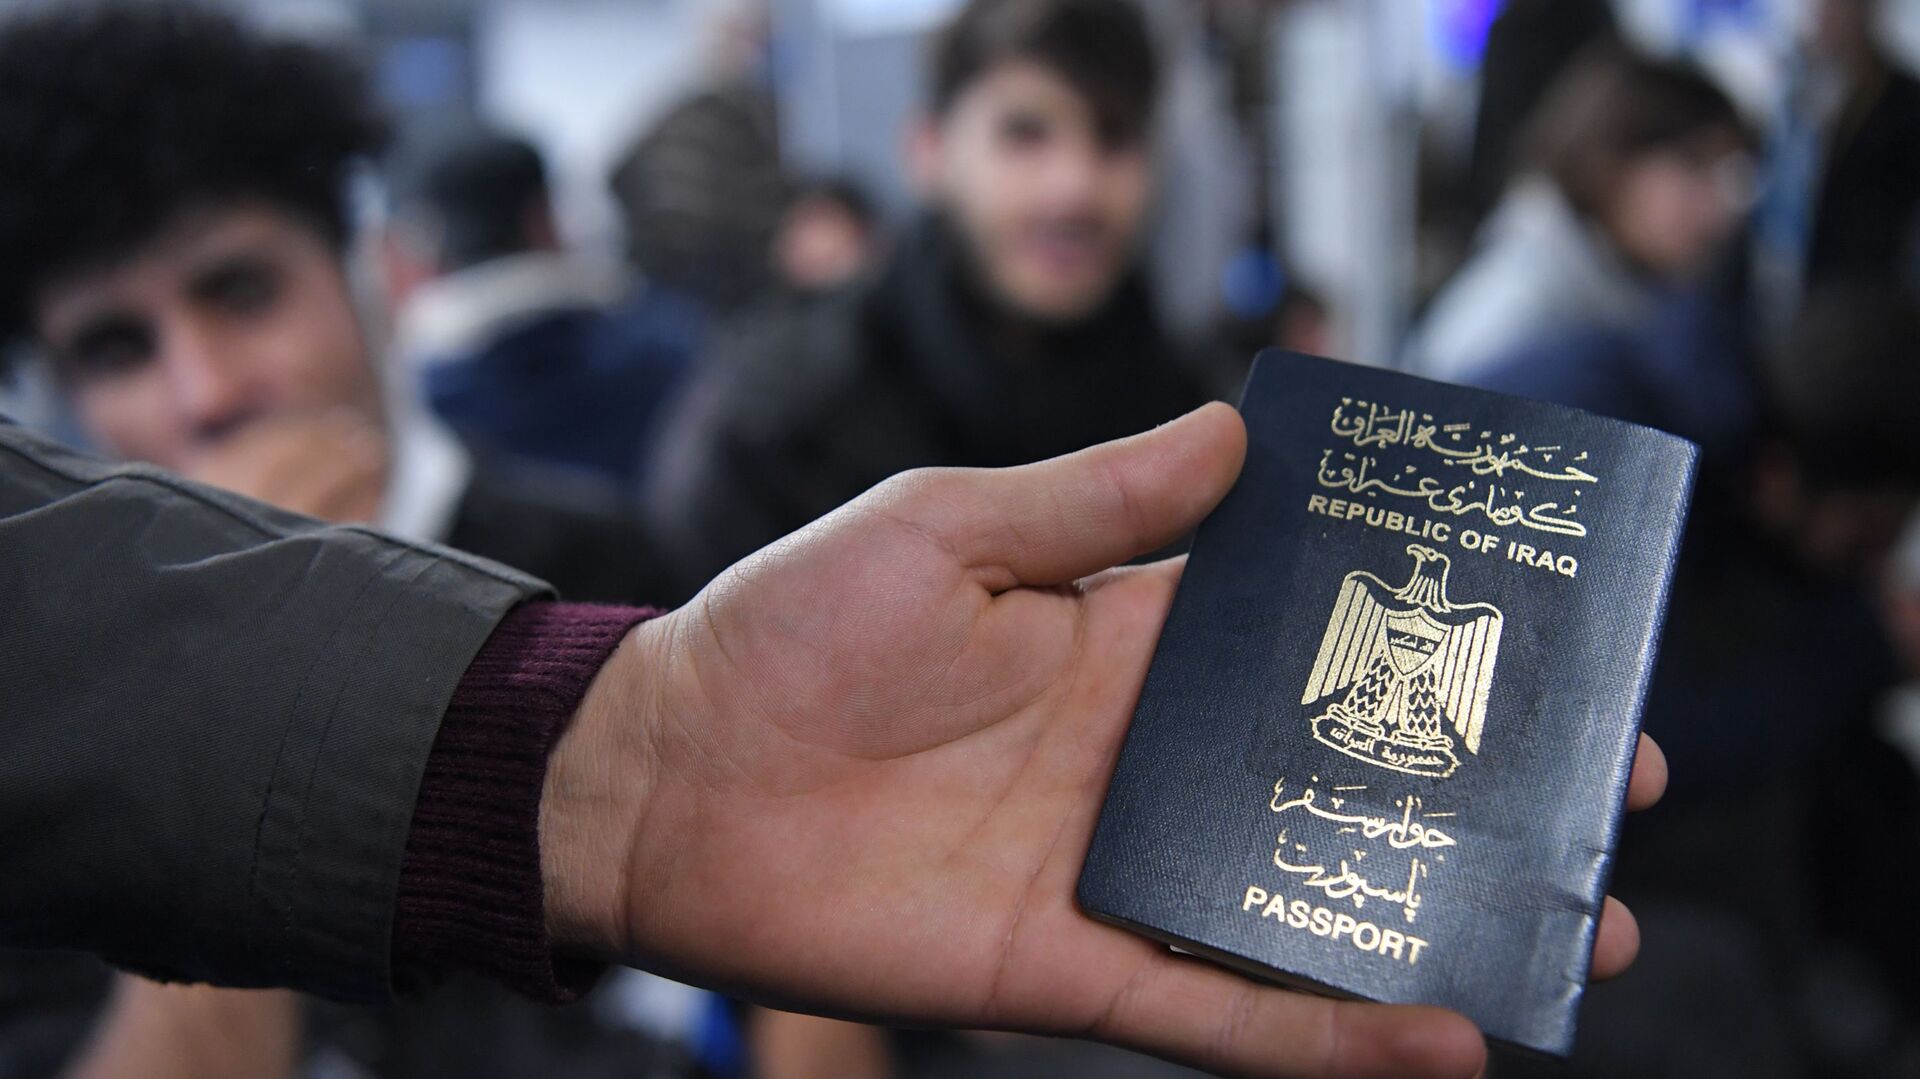 Иракский паспорт в руке одного из беженцев, ожидающих в международном аэропорту Минска вывозных рейсов авиакомпании Iraqi Airways - Sputnik Беларусь, 1920, 28.11.2021